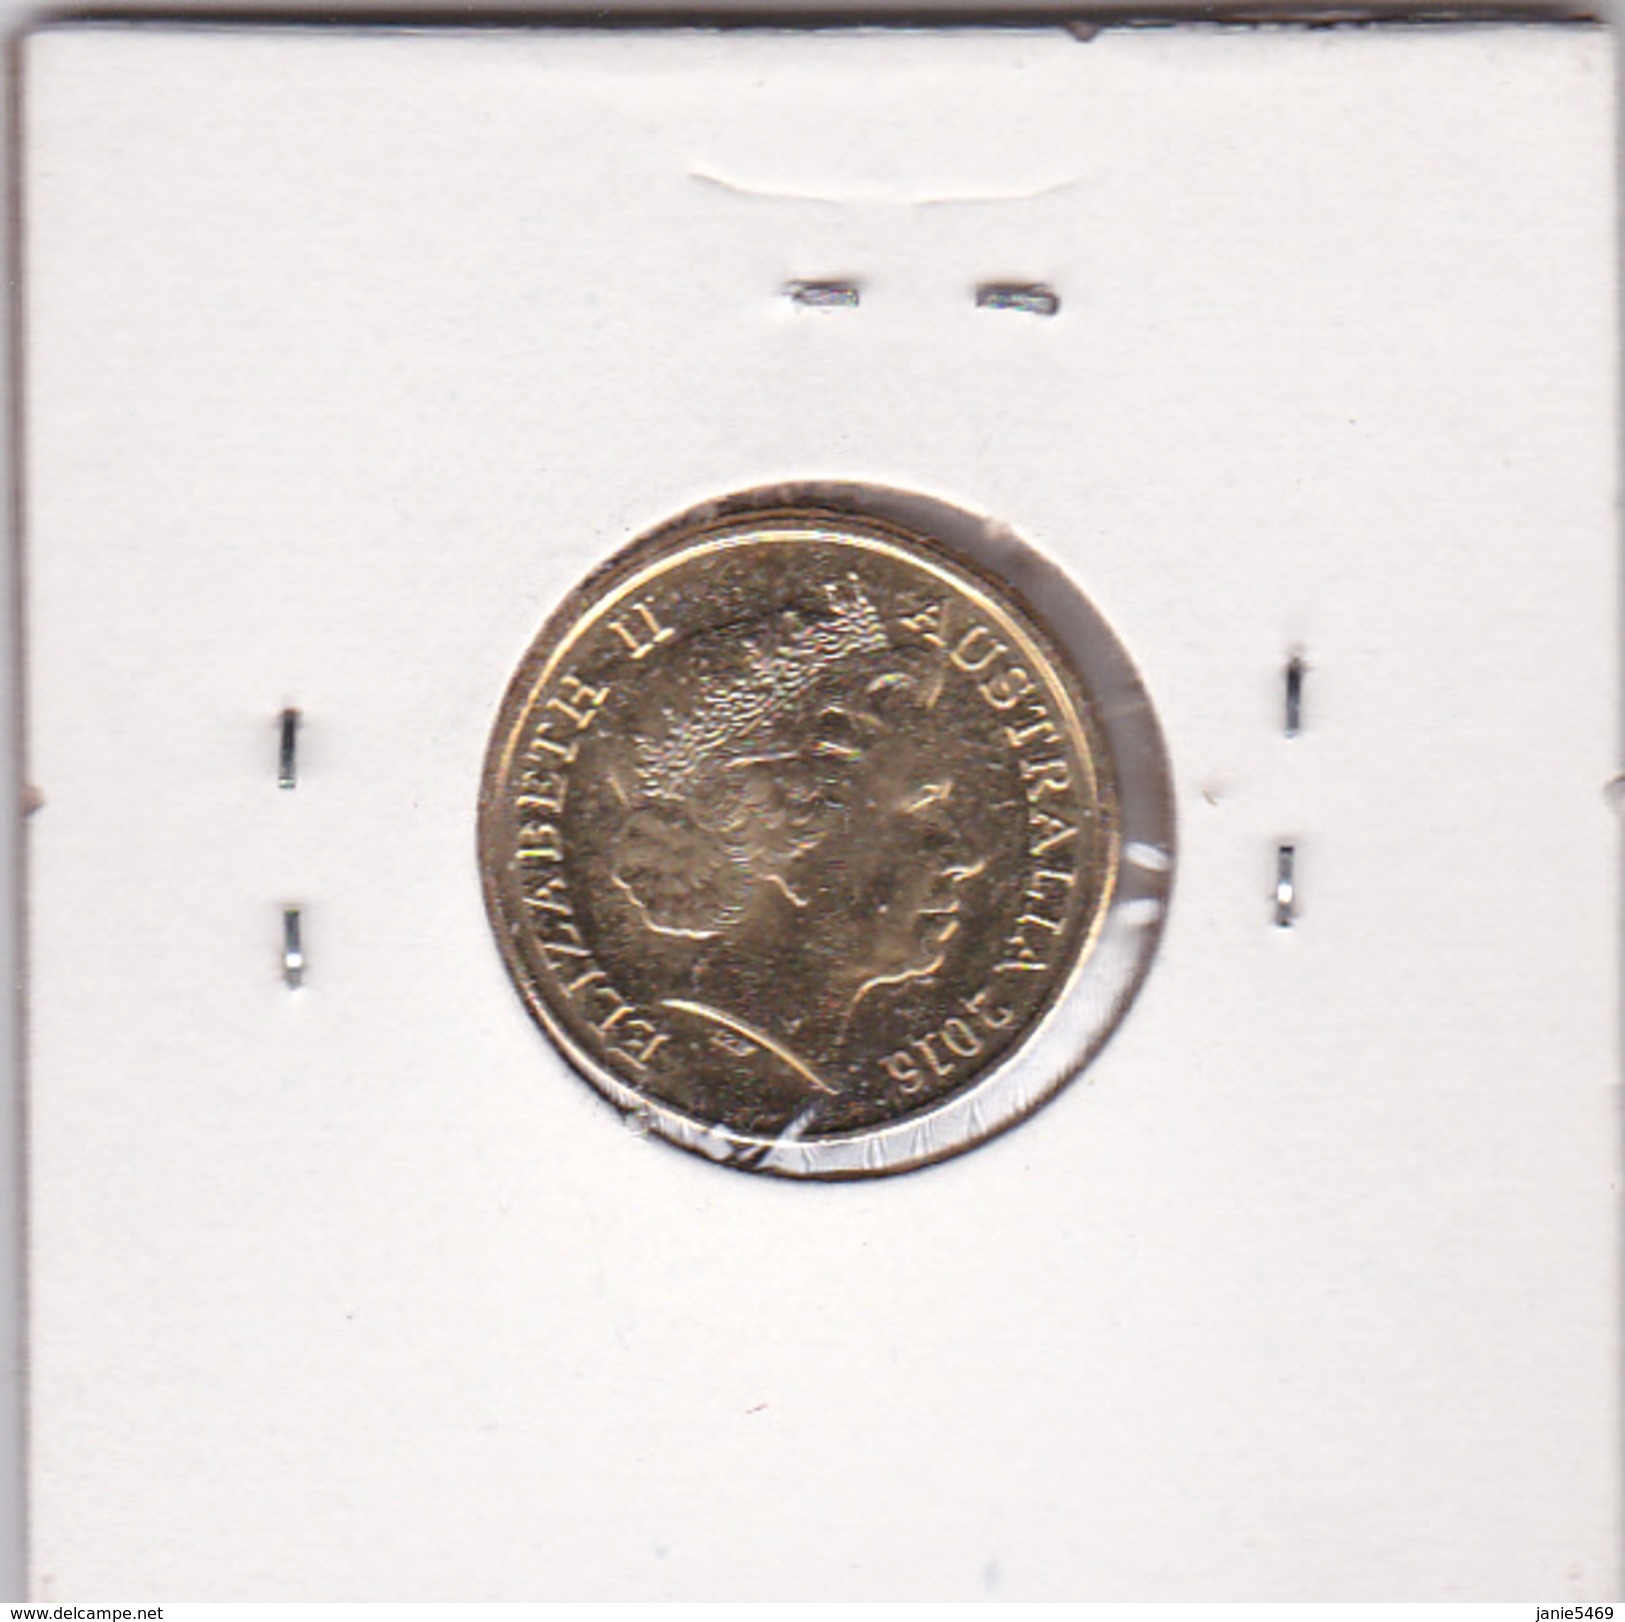 Australia 2016 $ 2.00 Coin - 2 Dollars